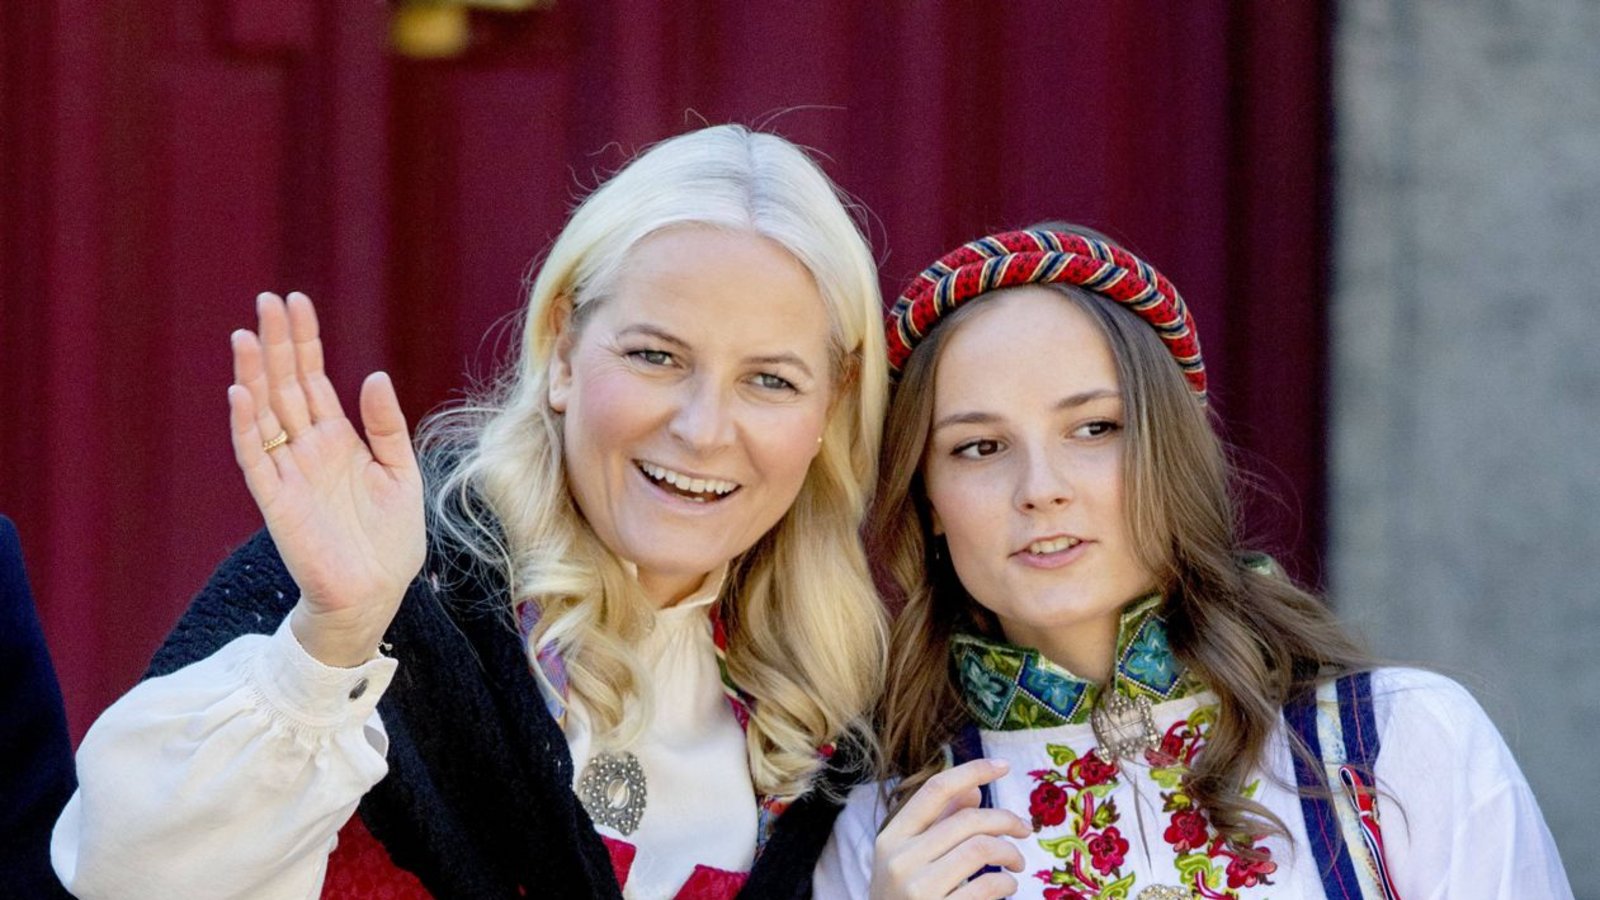 Traditionell tragen die Royals am Nationalfeiertag norwegische Tracht.Foto: IMAGO/PPE/IMAGO/PPE